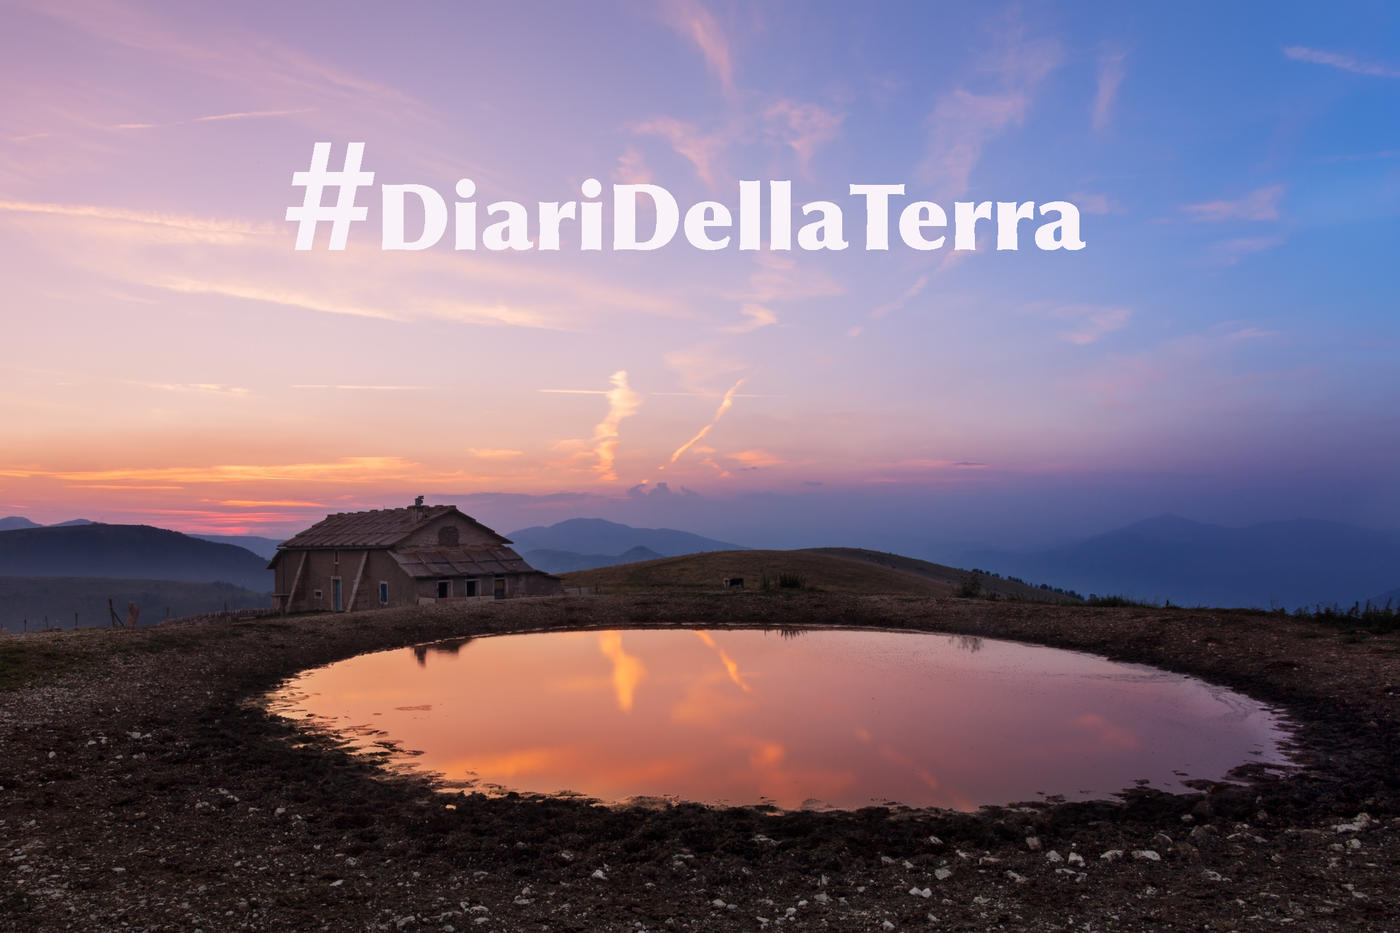 DIARI DELLA TERRA. Il PSR Veneto lancia una sfida su Instagram per riscoprire le aree rurali 